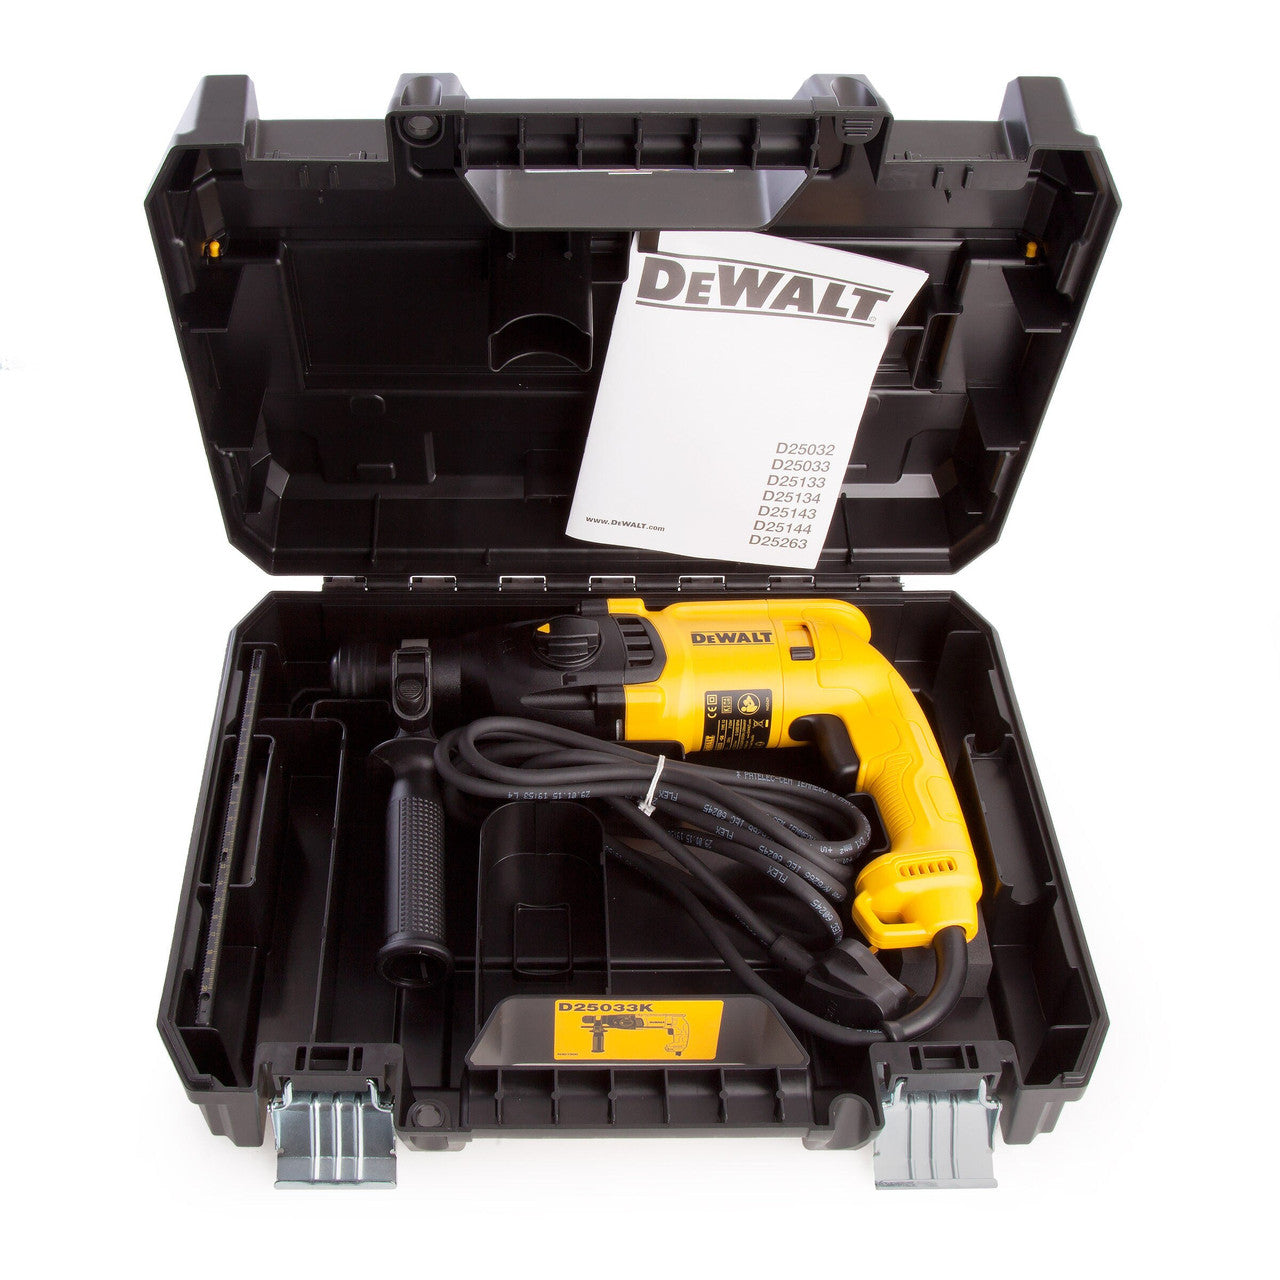 Dewalt D25033K 3 Mode SDS Plus Hammer Drill (110V)